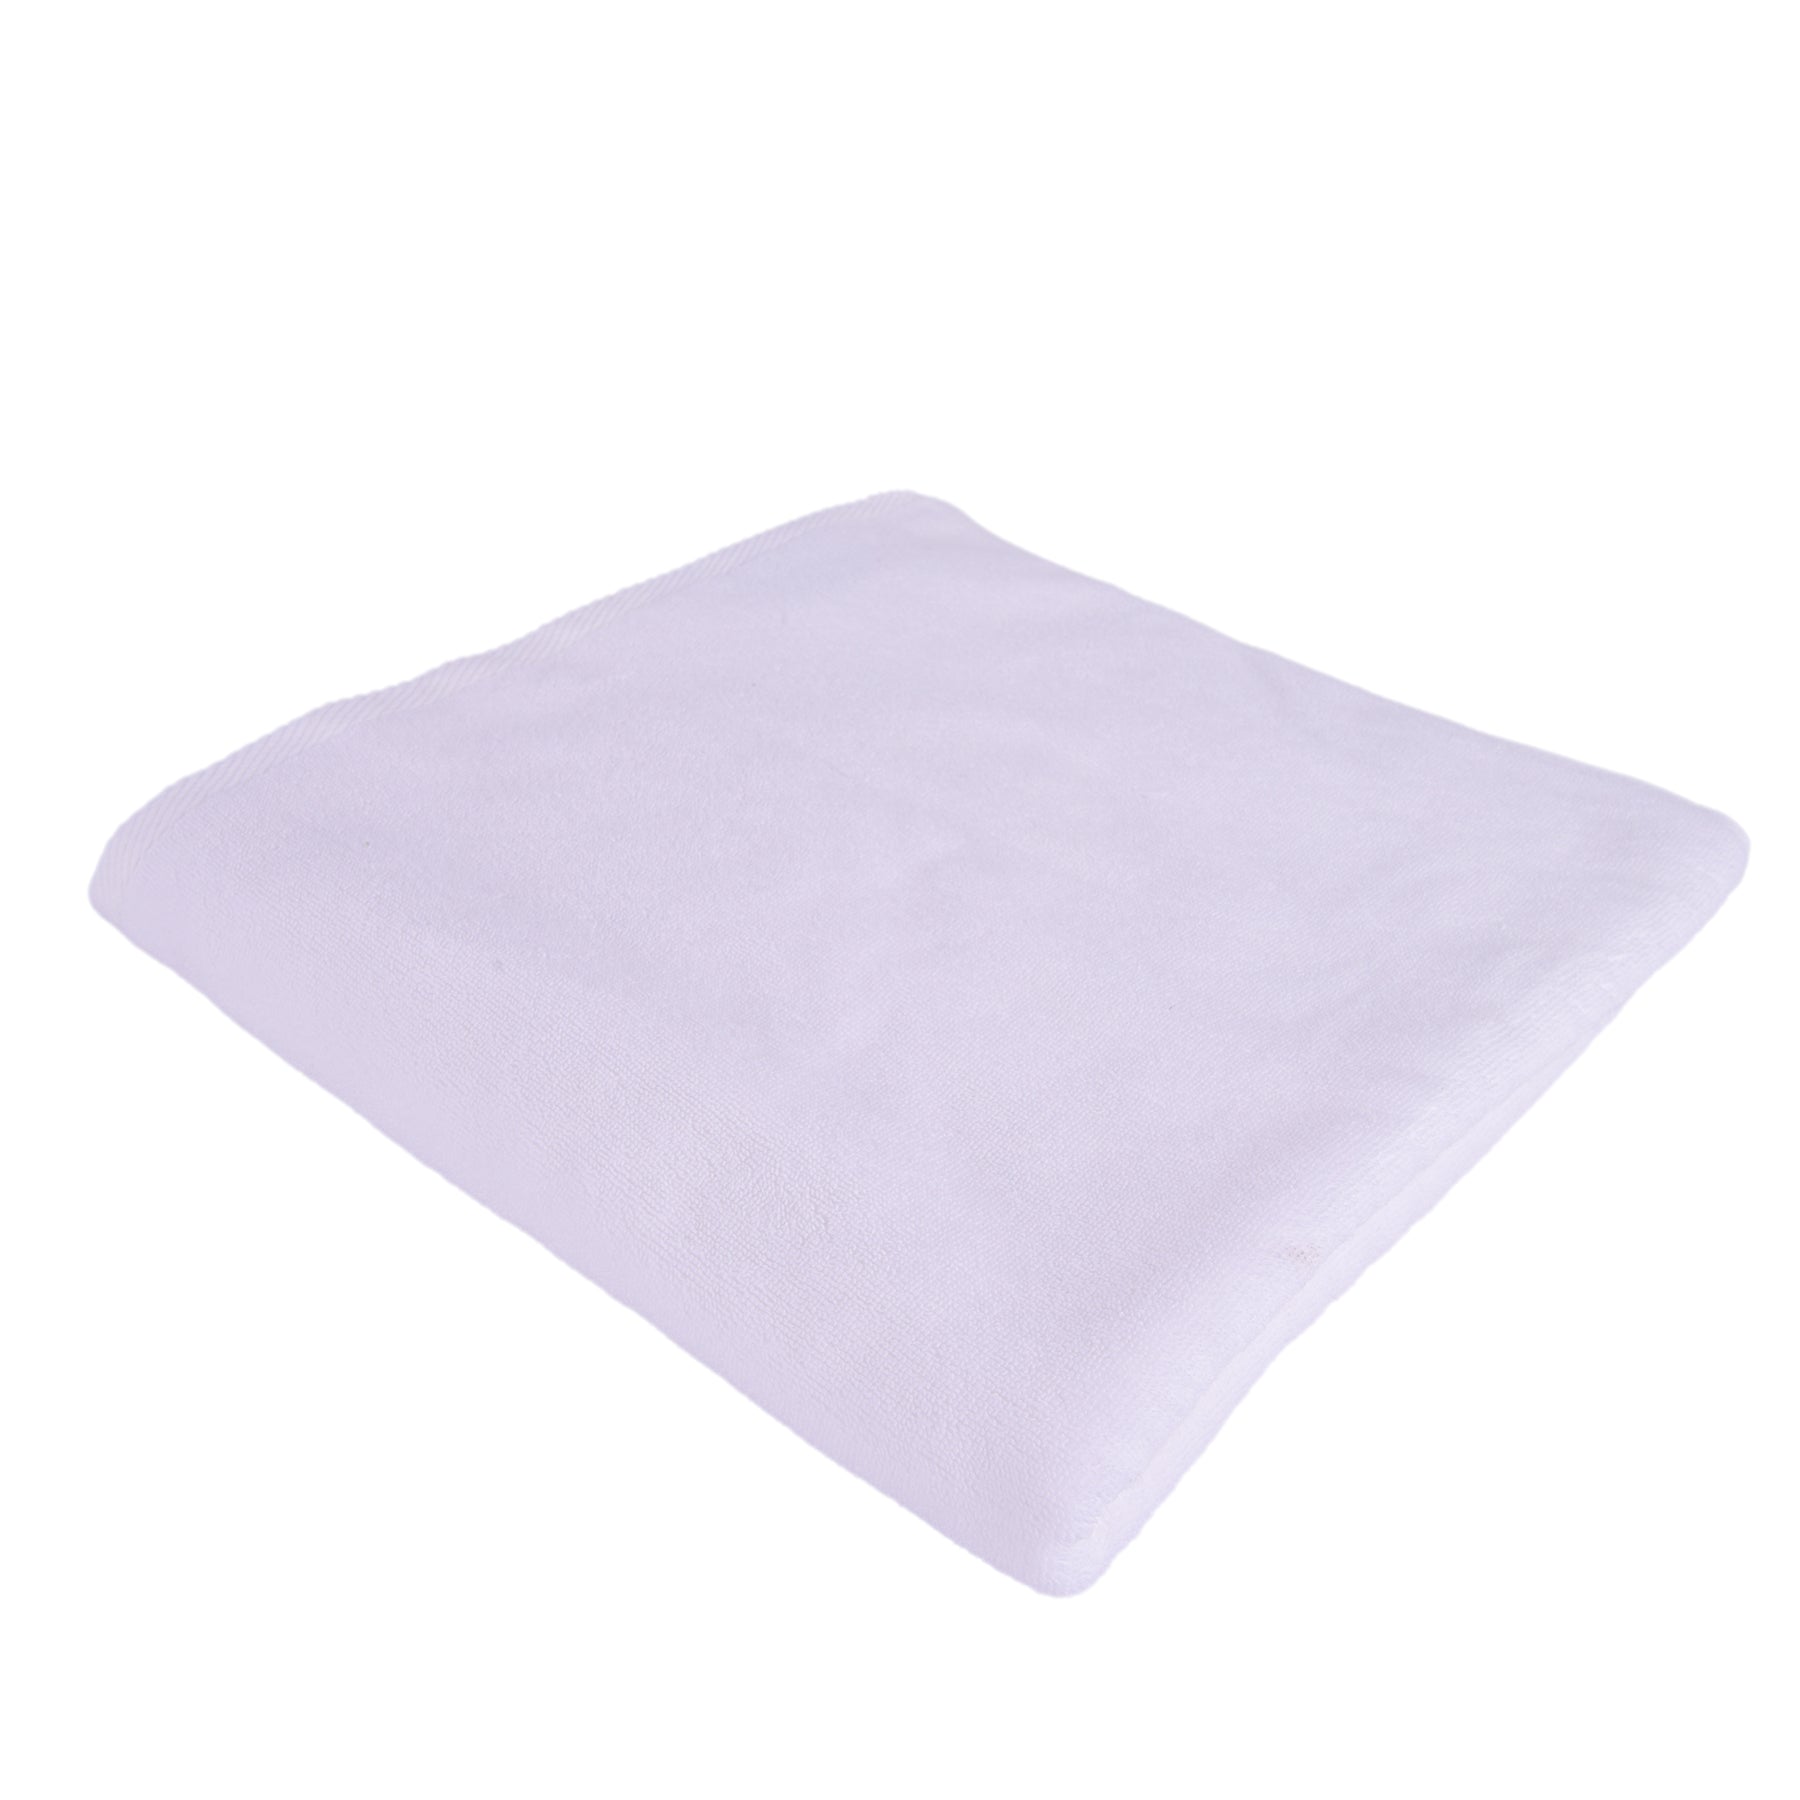 Bath Towel - WhiteSize: 70x140cm.